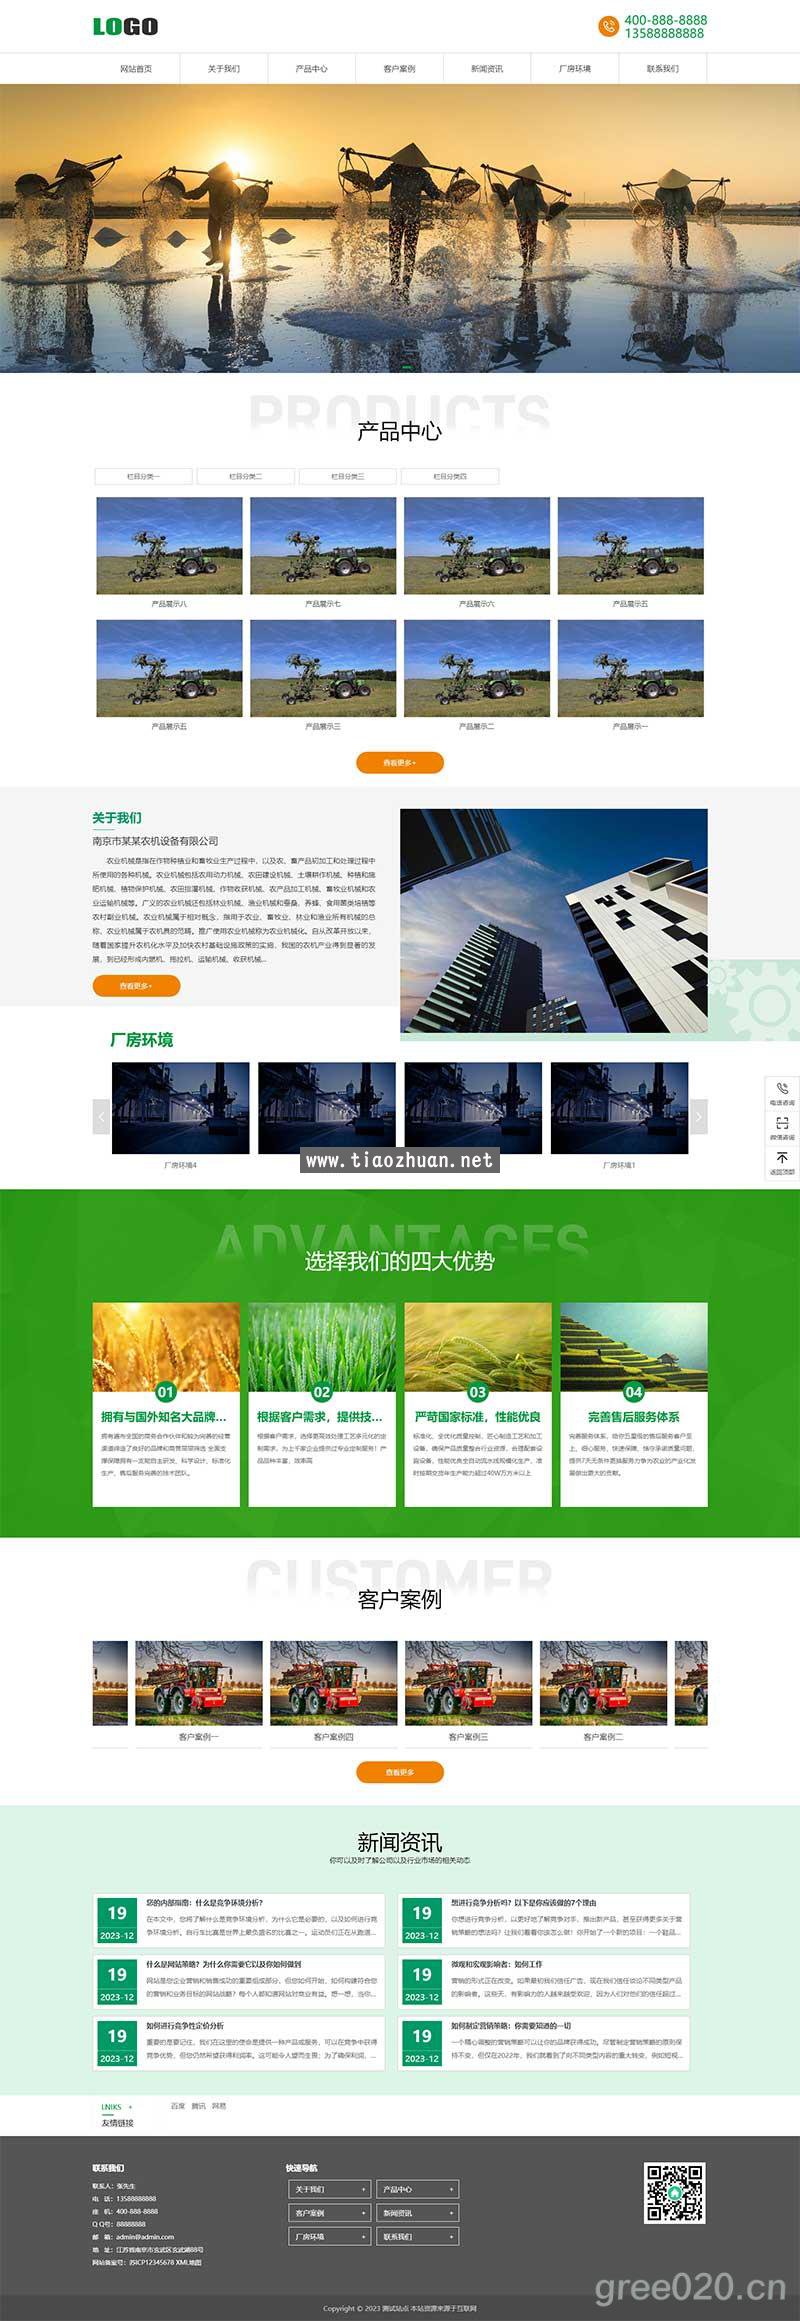 农业机械公司网站模板 绿色农机网站源码下载